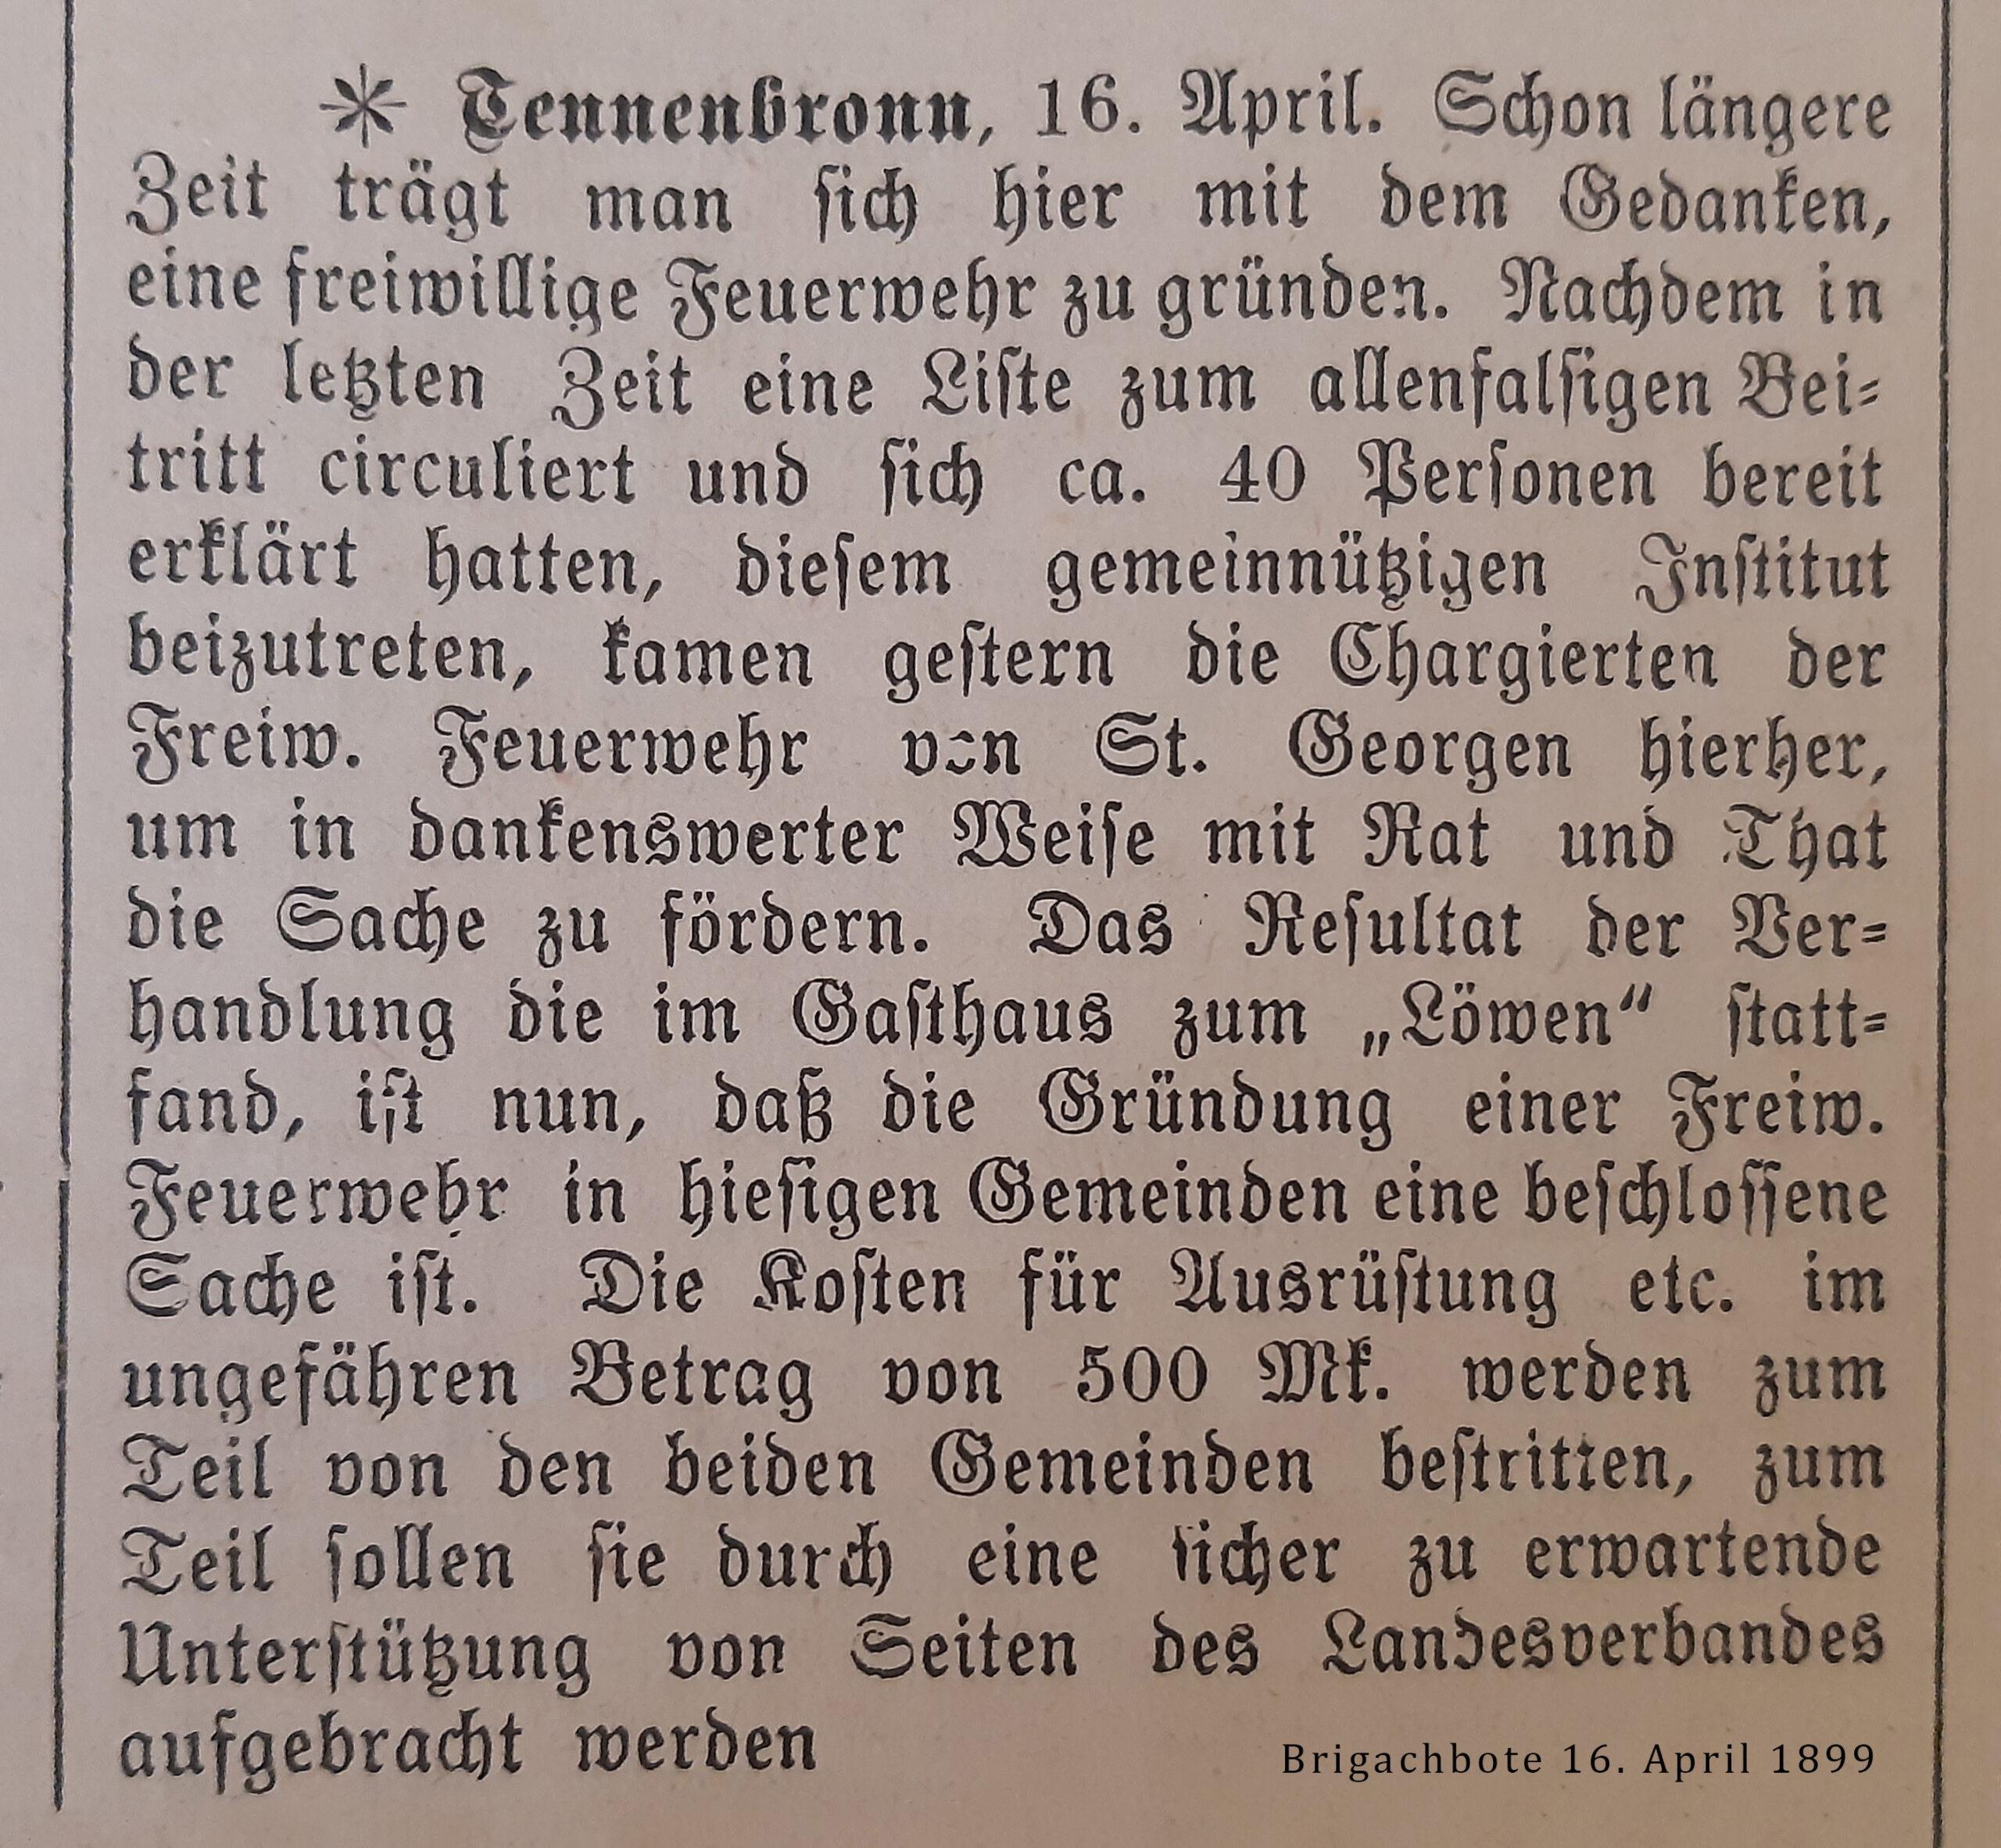 1899 04 16 brigachbote